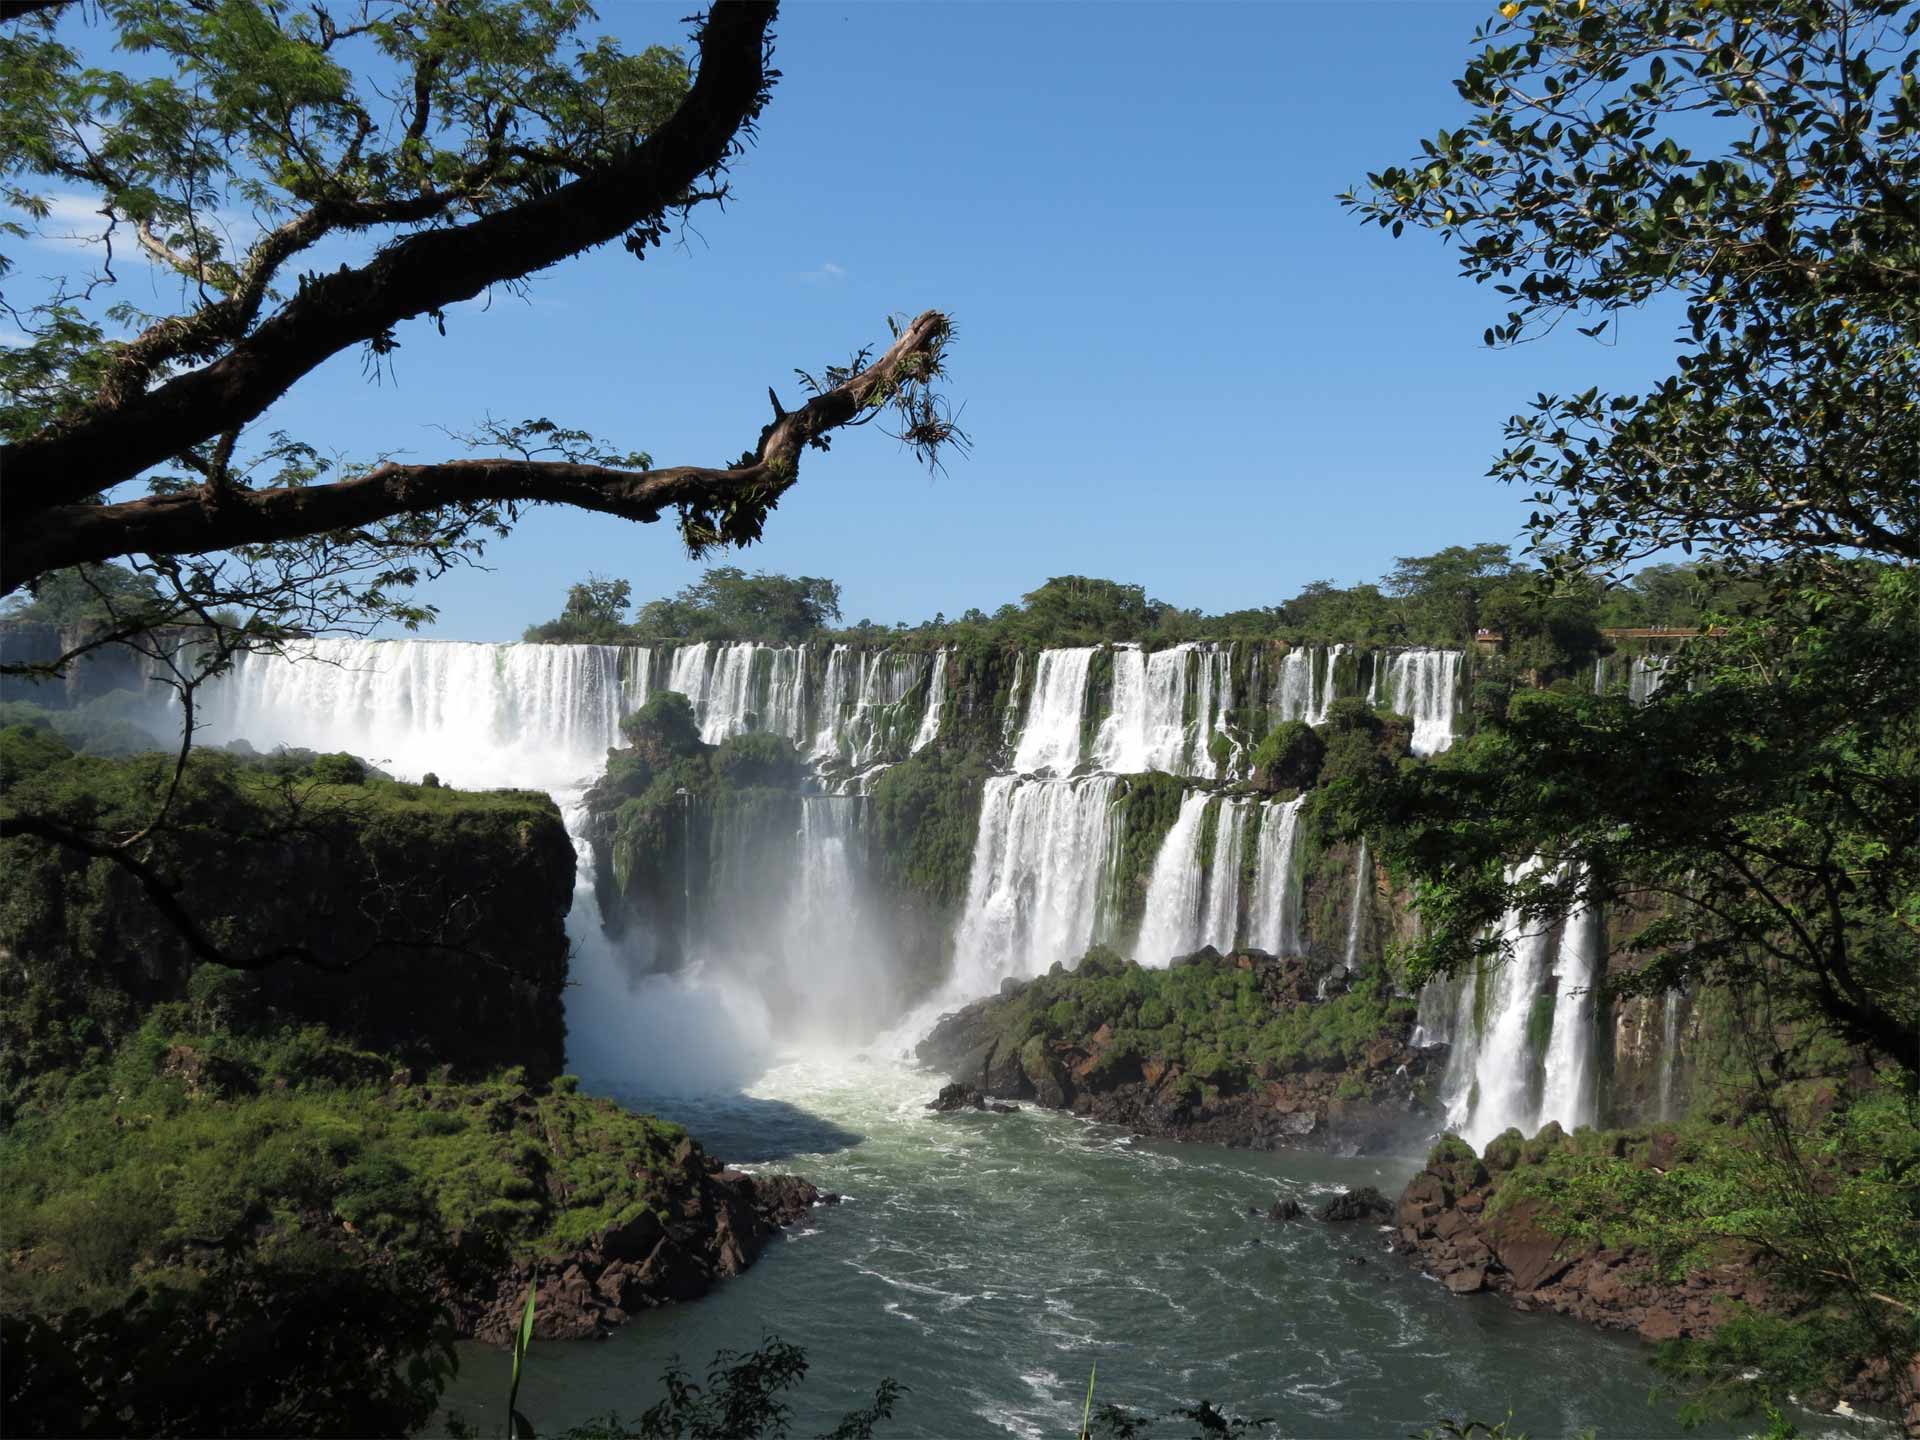 Las cataratas del Iguazú, situadas en la frontera entre Argentina y Brasil, son una atracción espectacular y una parada obligada en la visita al país.